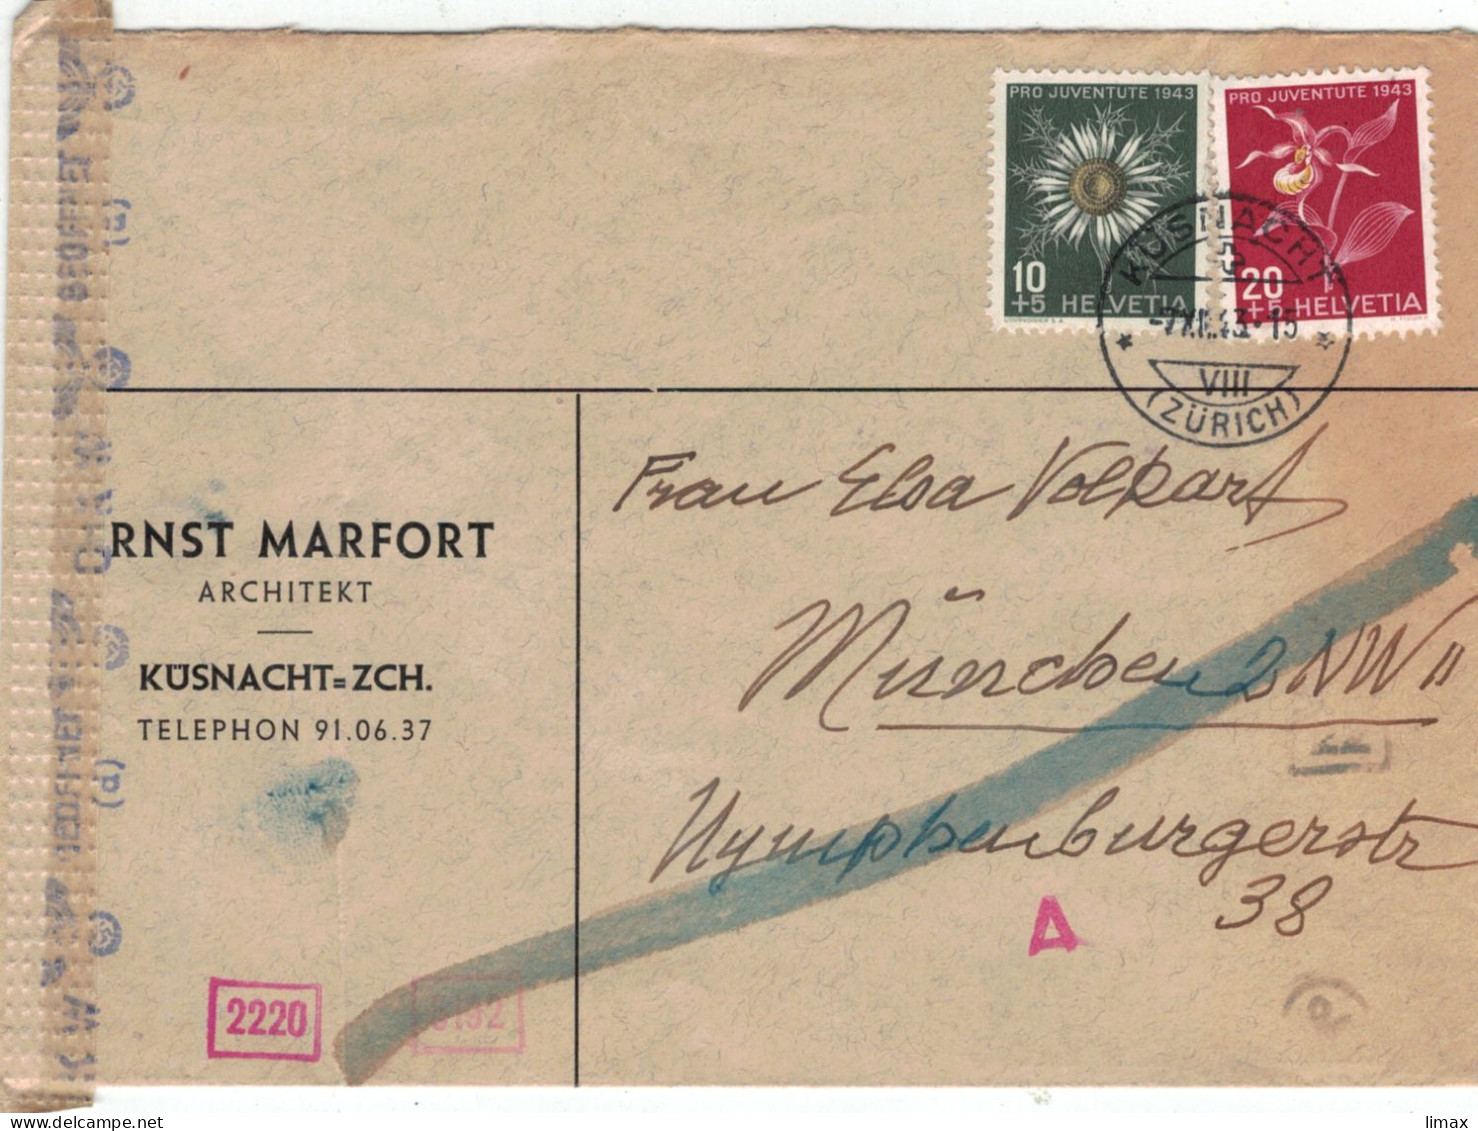 Ernst Marfort Küsnacht Architekt 1943 > Volkart München - Chemische Zensur OKW - Frauenschuh Silberdistel - Storia Postale